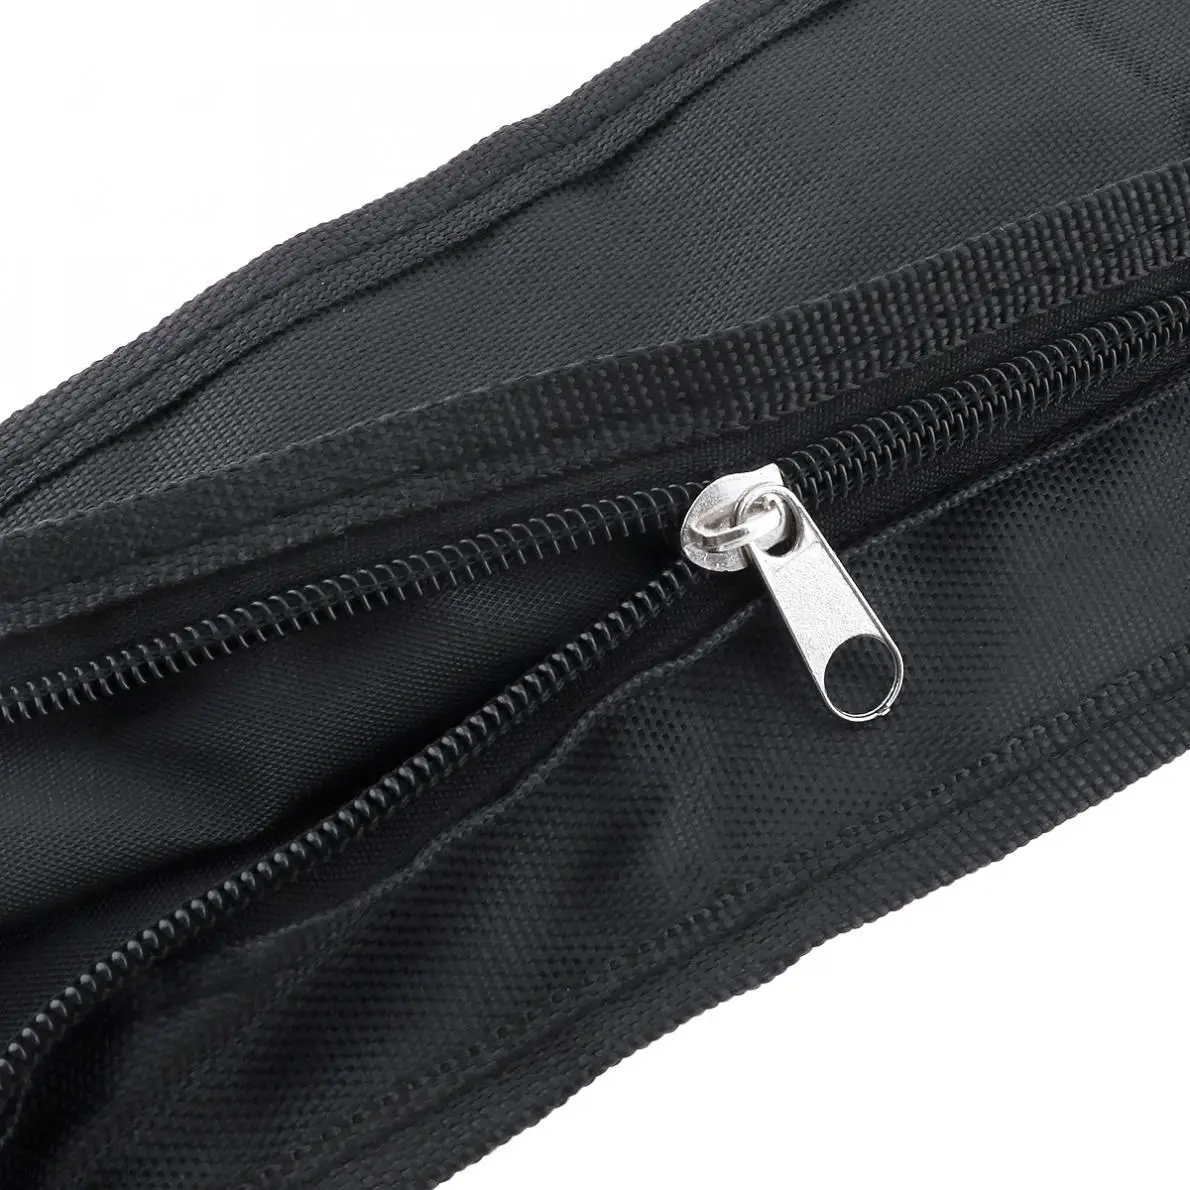 21 дюймов черный портативный укулеле/гитара сумка Мягкий чехол Однослойная сумка на одно плечо рюкзак мягкий